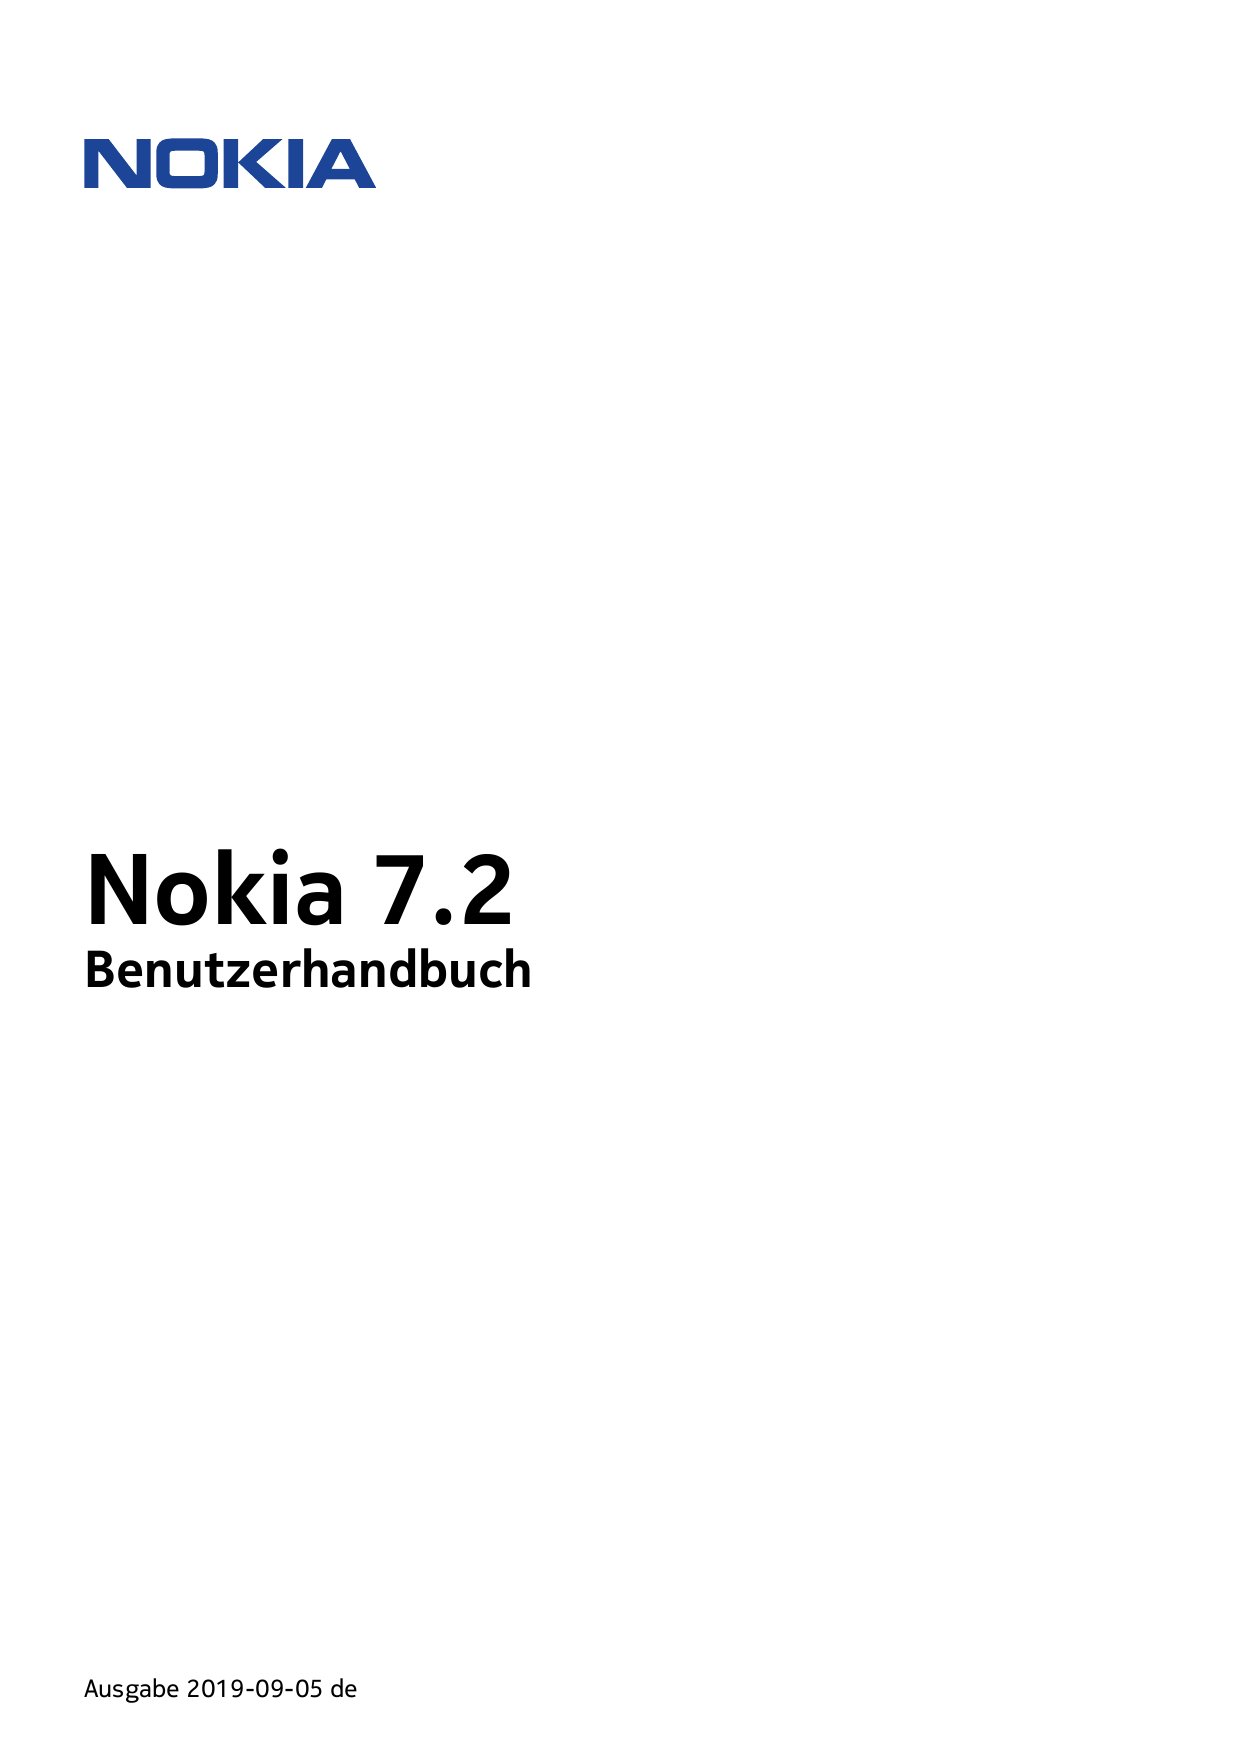 Nokia 7.2BenutzerhandbuchAusgabe 2019-09-05 de